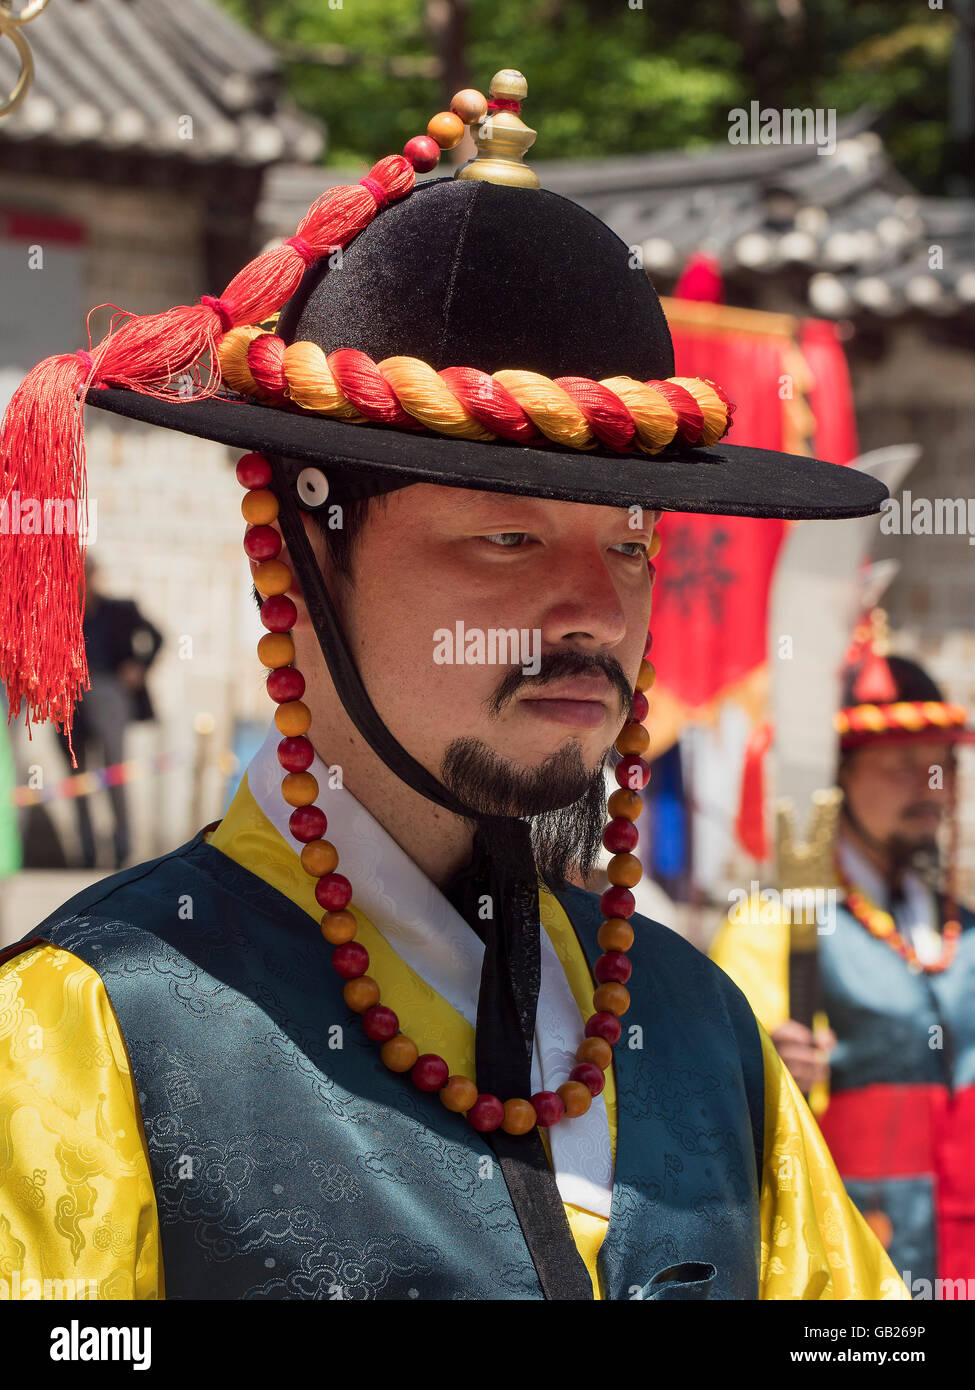 Die Wachablösung in traditionellen Uniformen am Daehanmun Tor des Palastes Deoksugung, Seoul, Südkorea, Asien Stockfoto